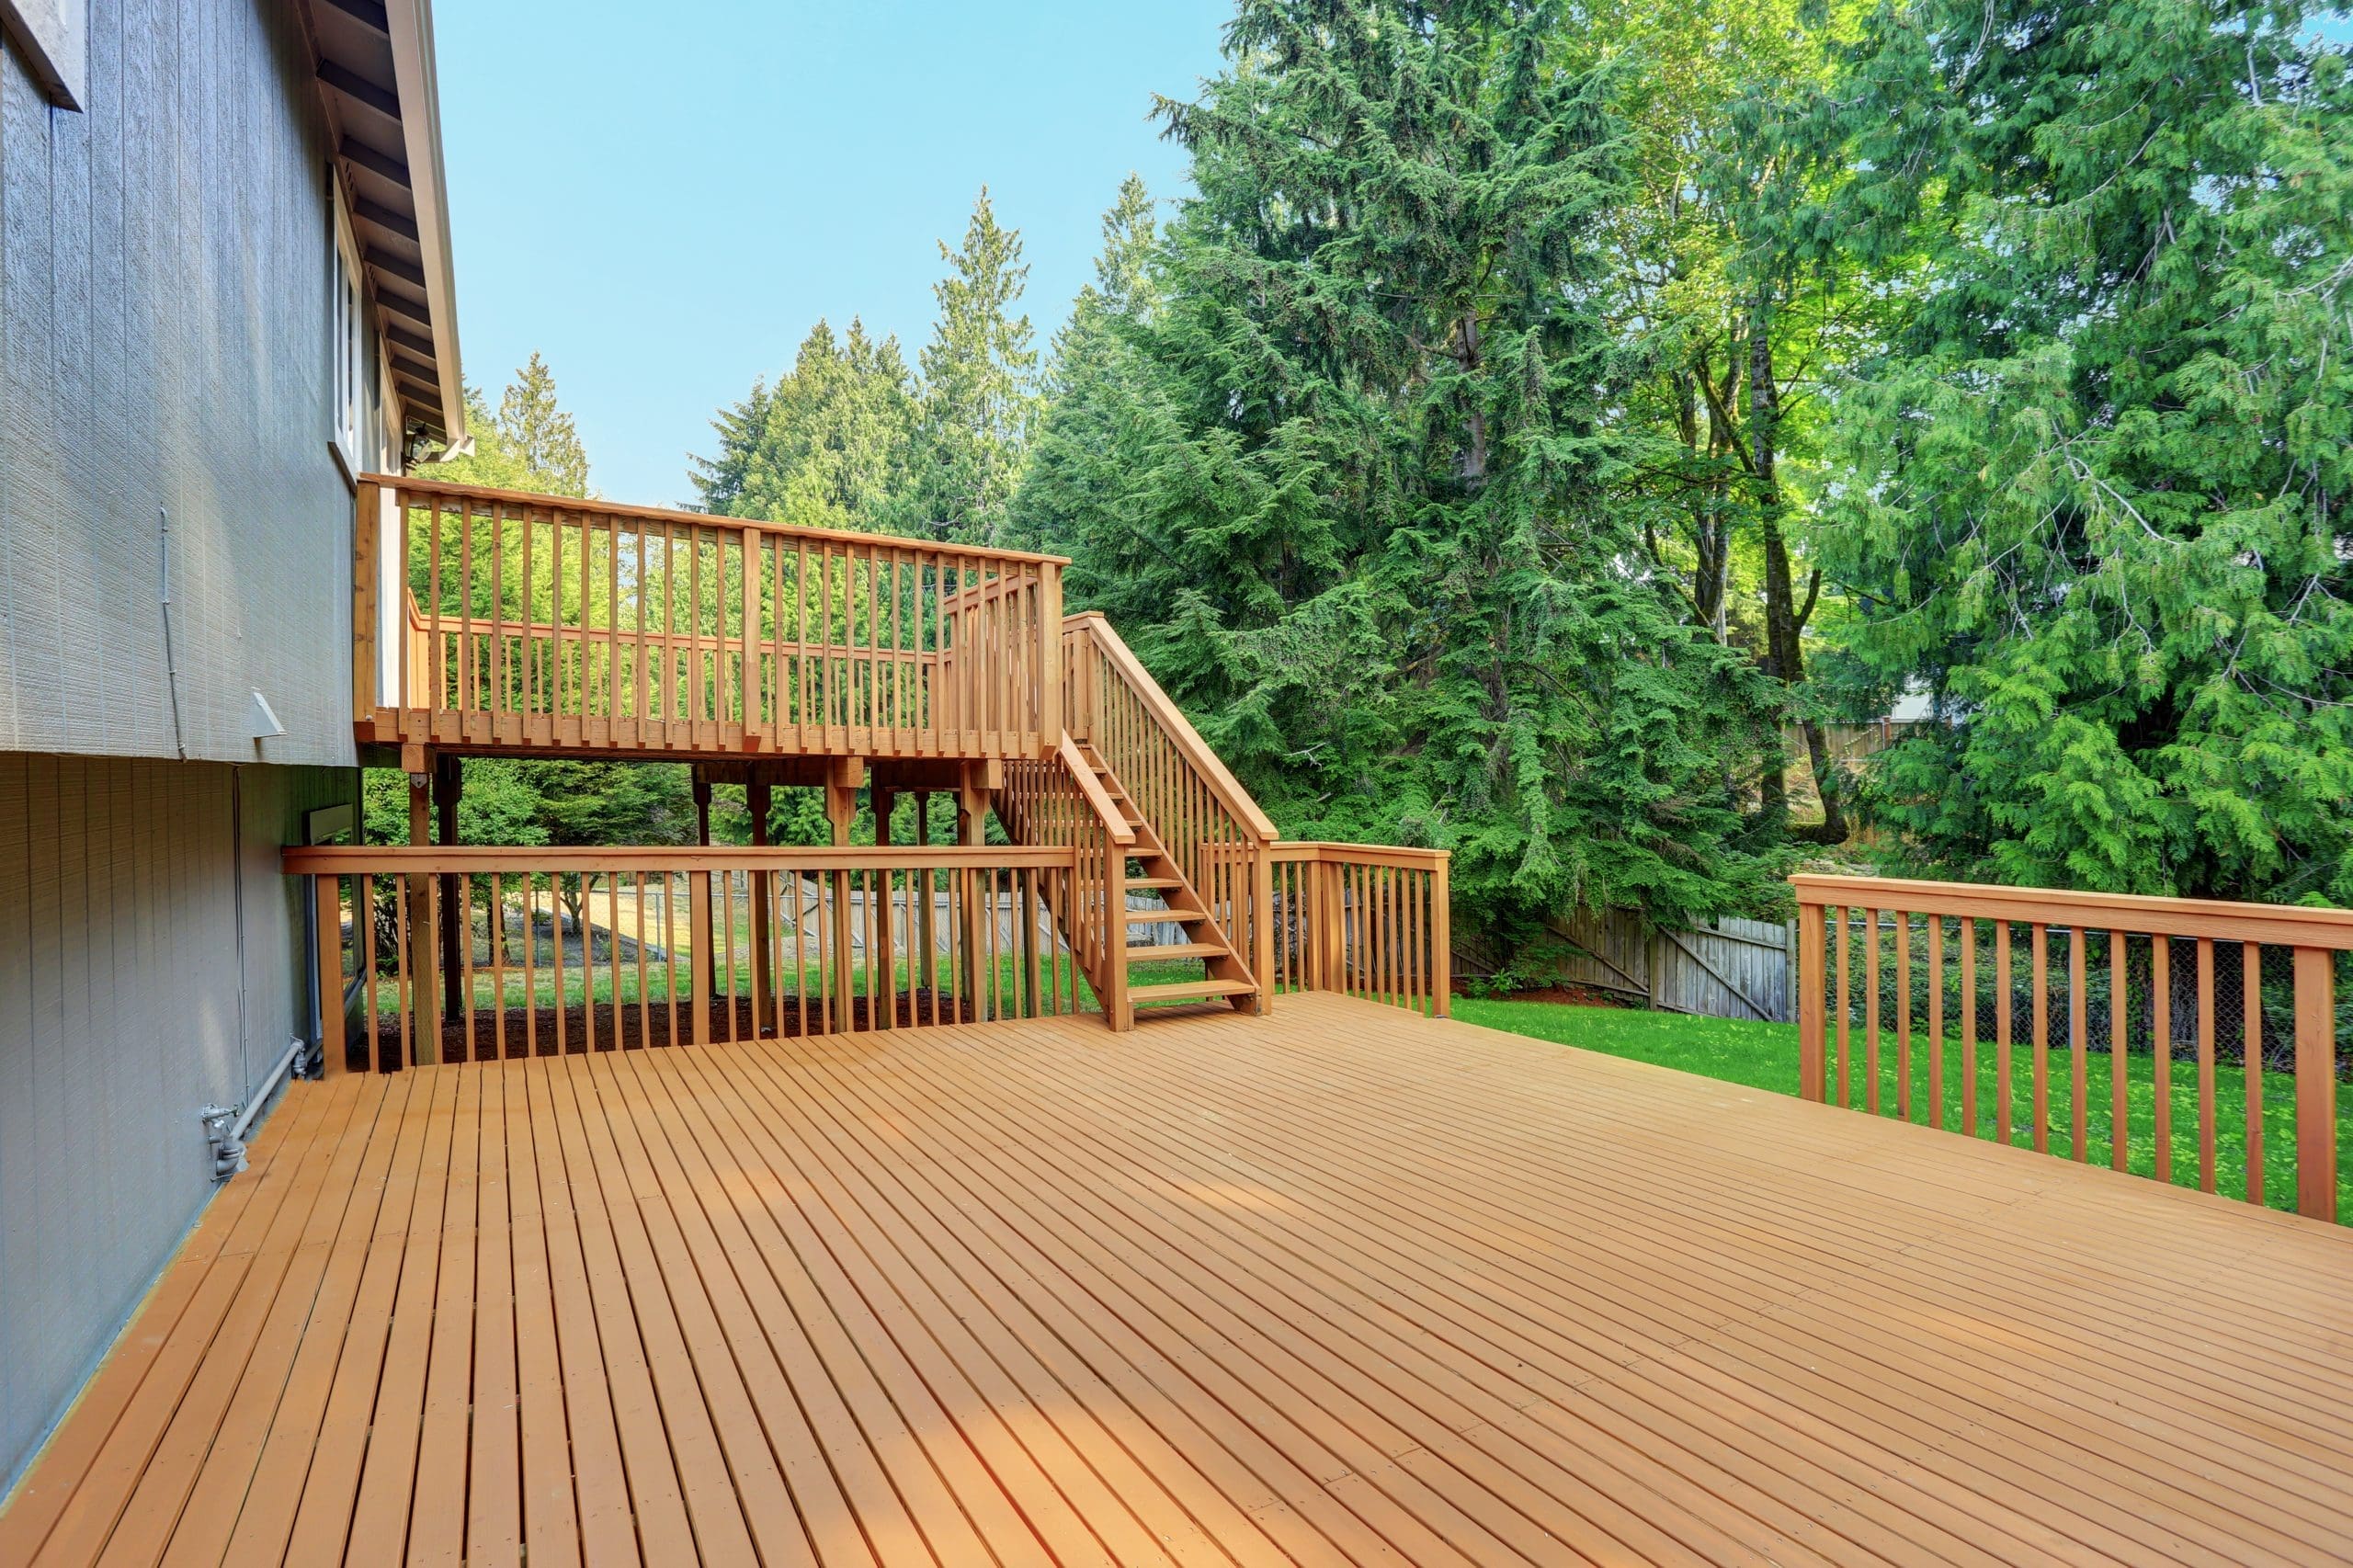 deck builder little rock arkansas excellent decking wooden wood cedar decks contractor contractors top quality customer service